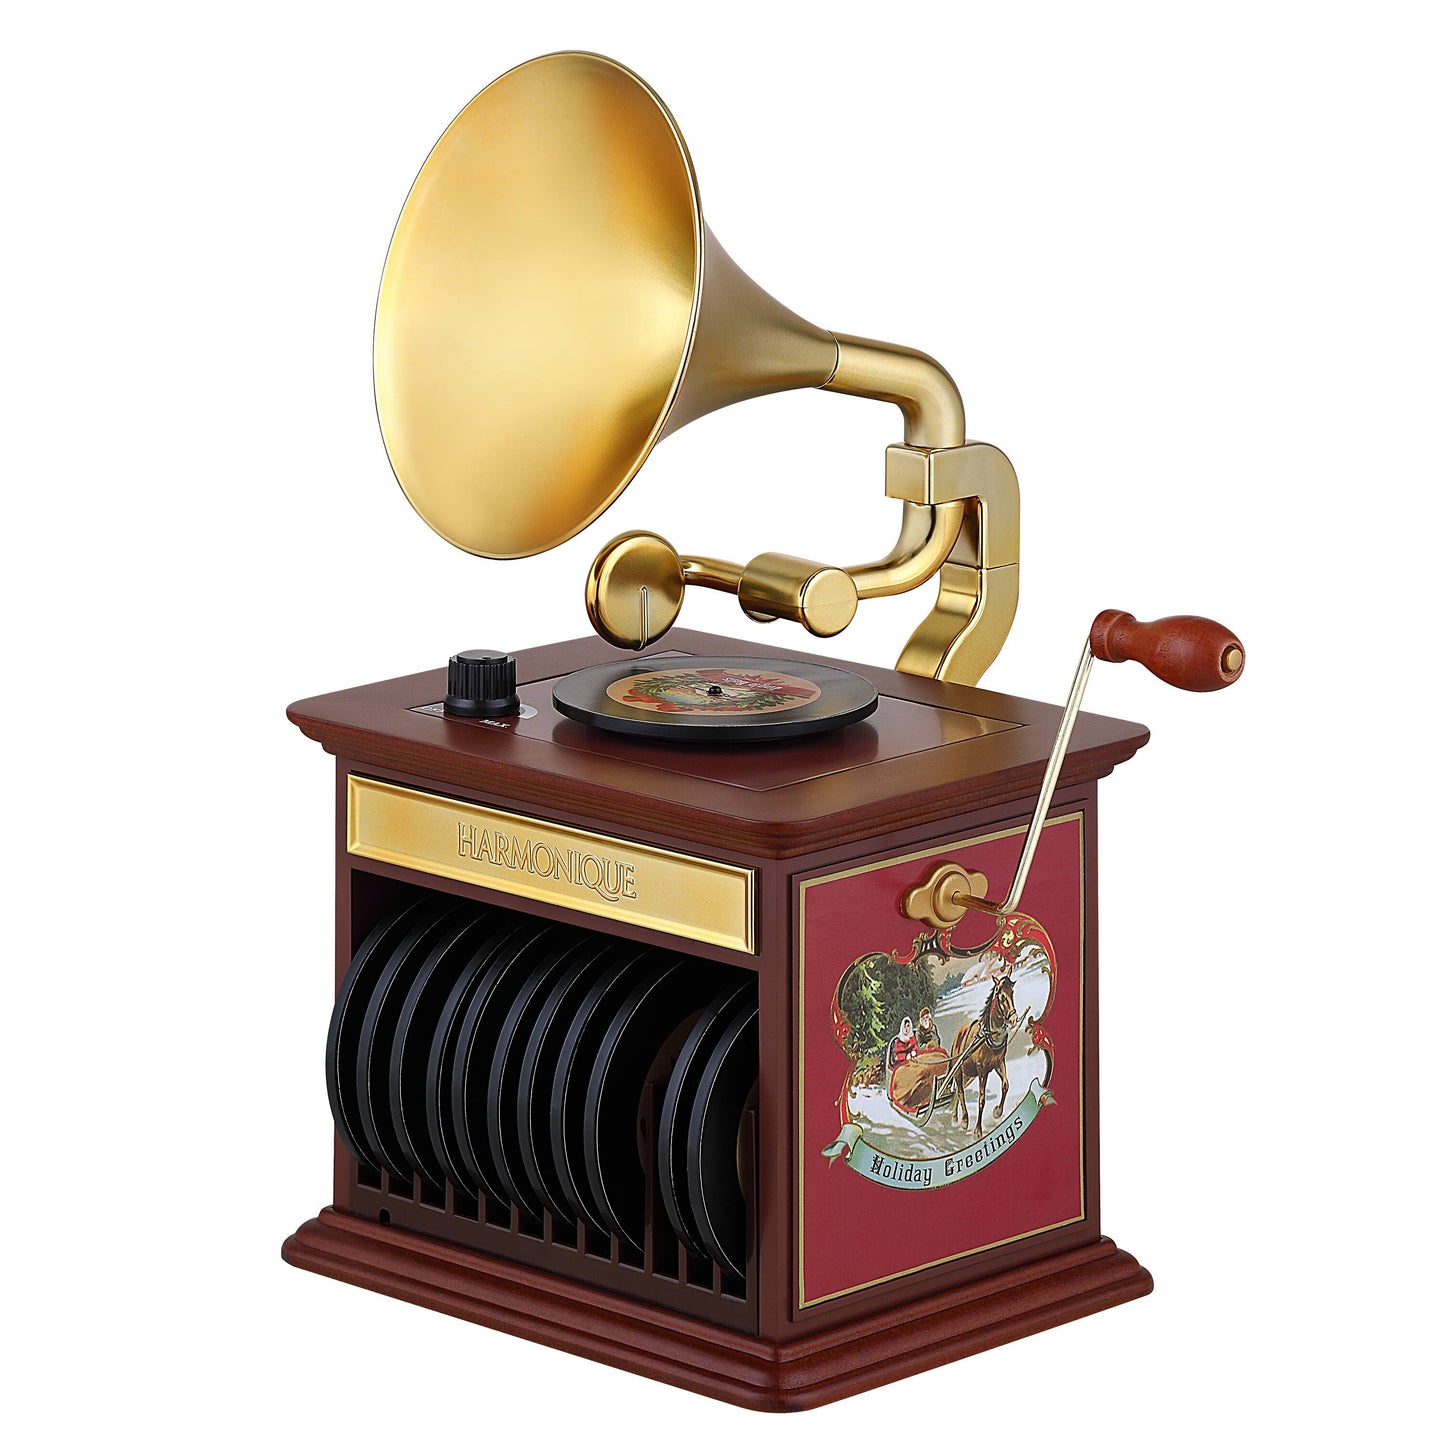 90th Anniversary Gramophone